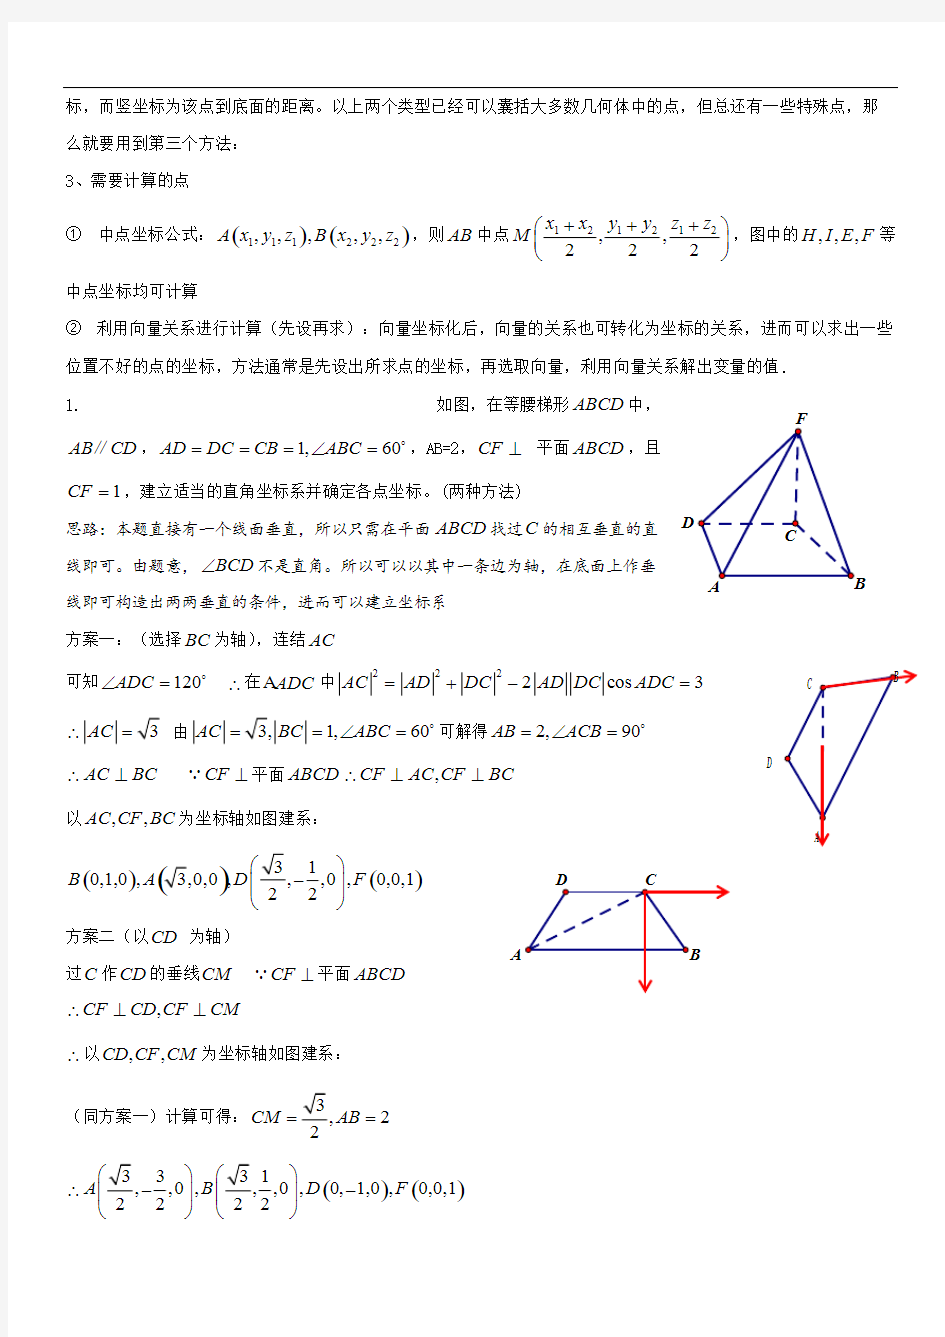 (完整版)立体几何解答题的建系设点问题